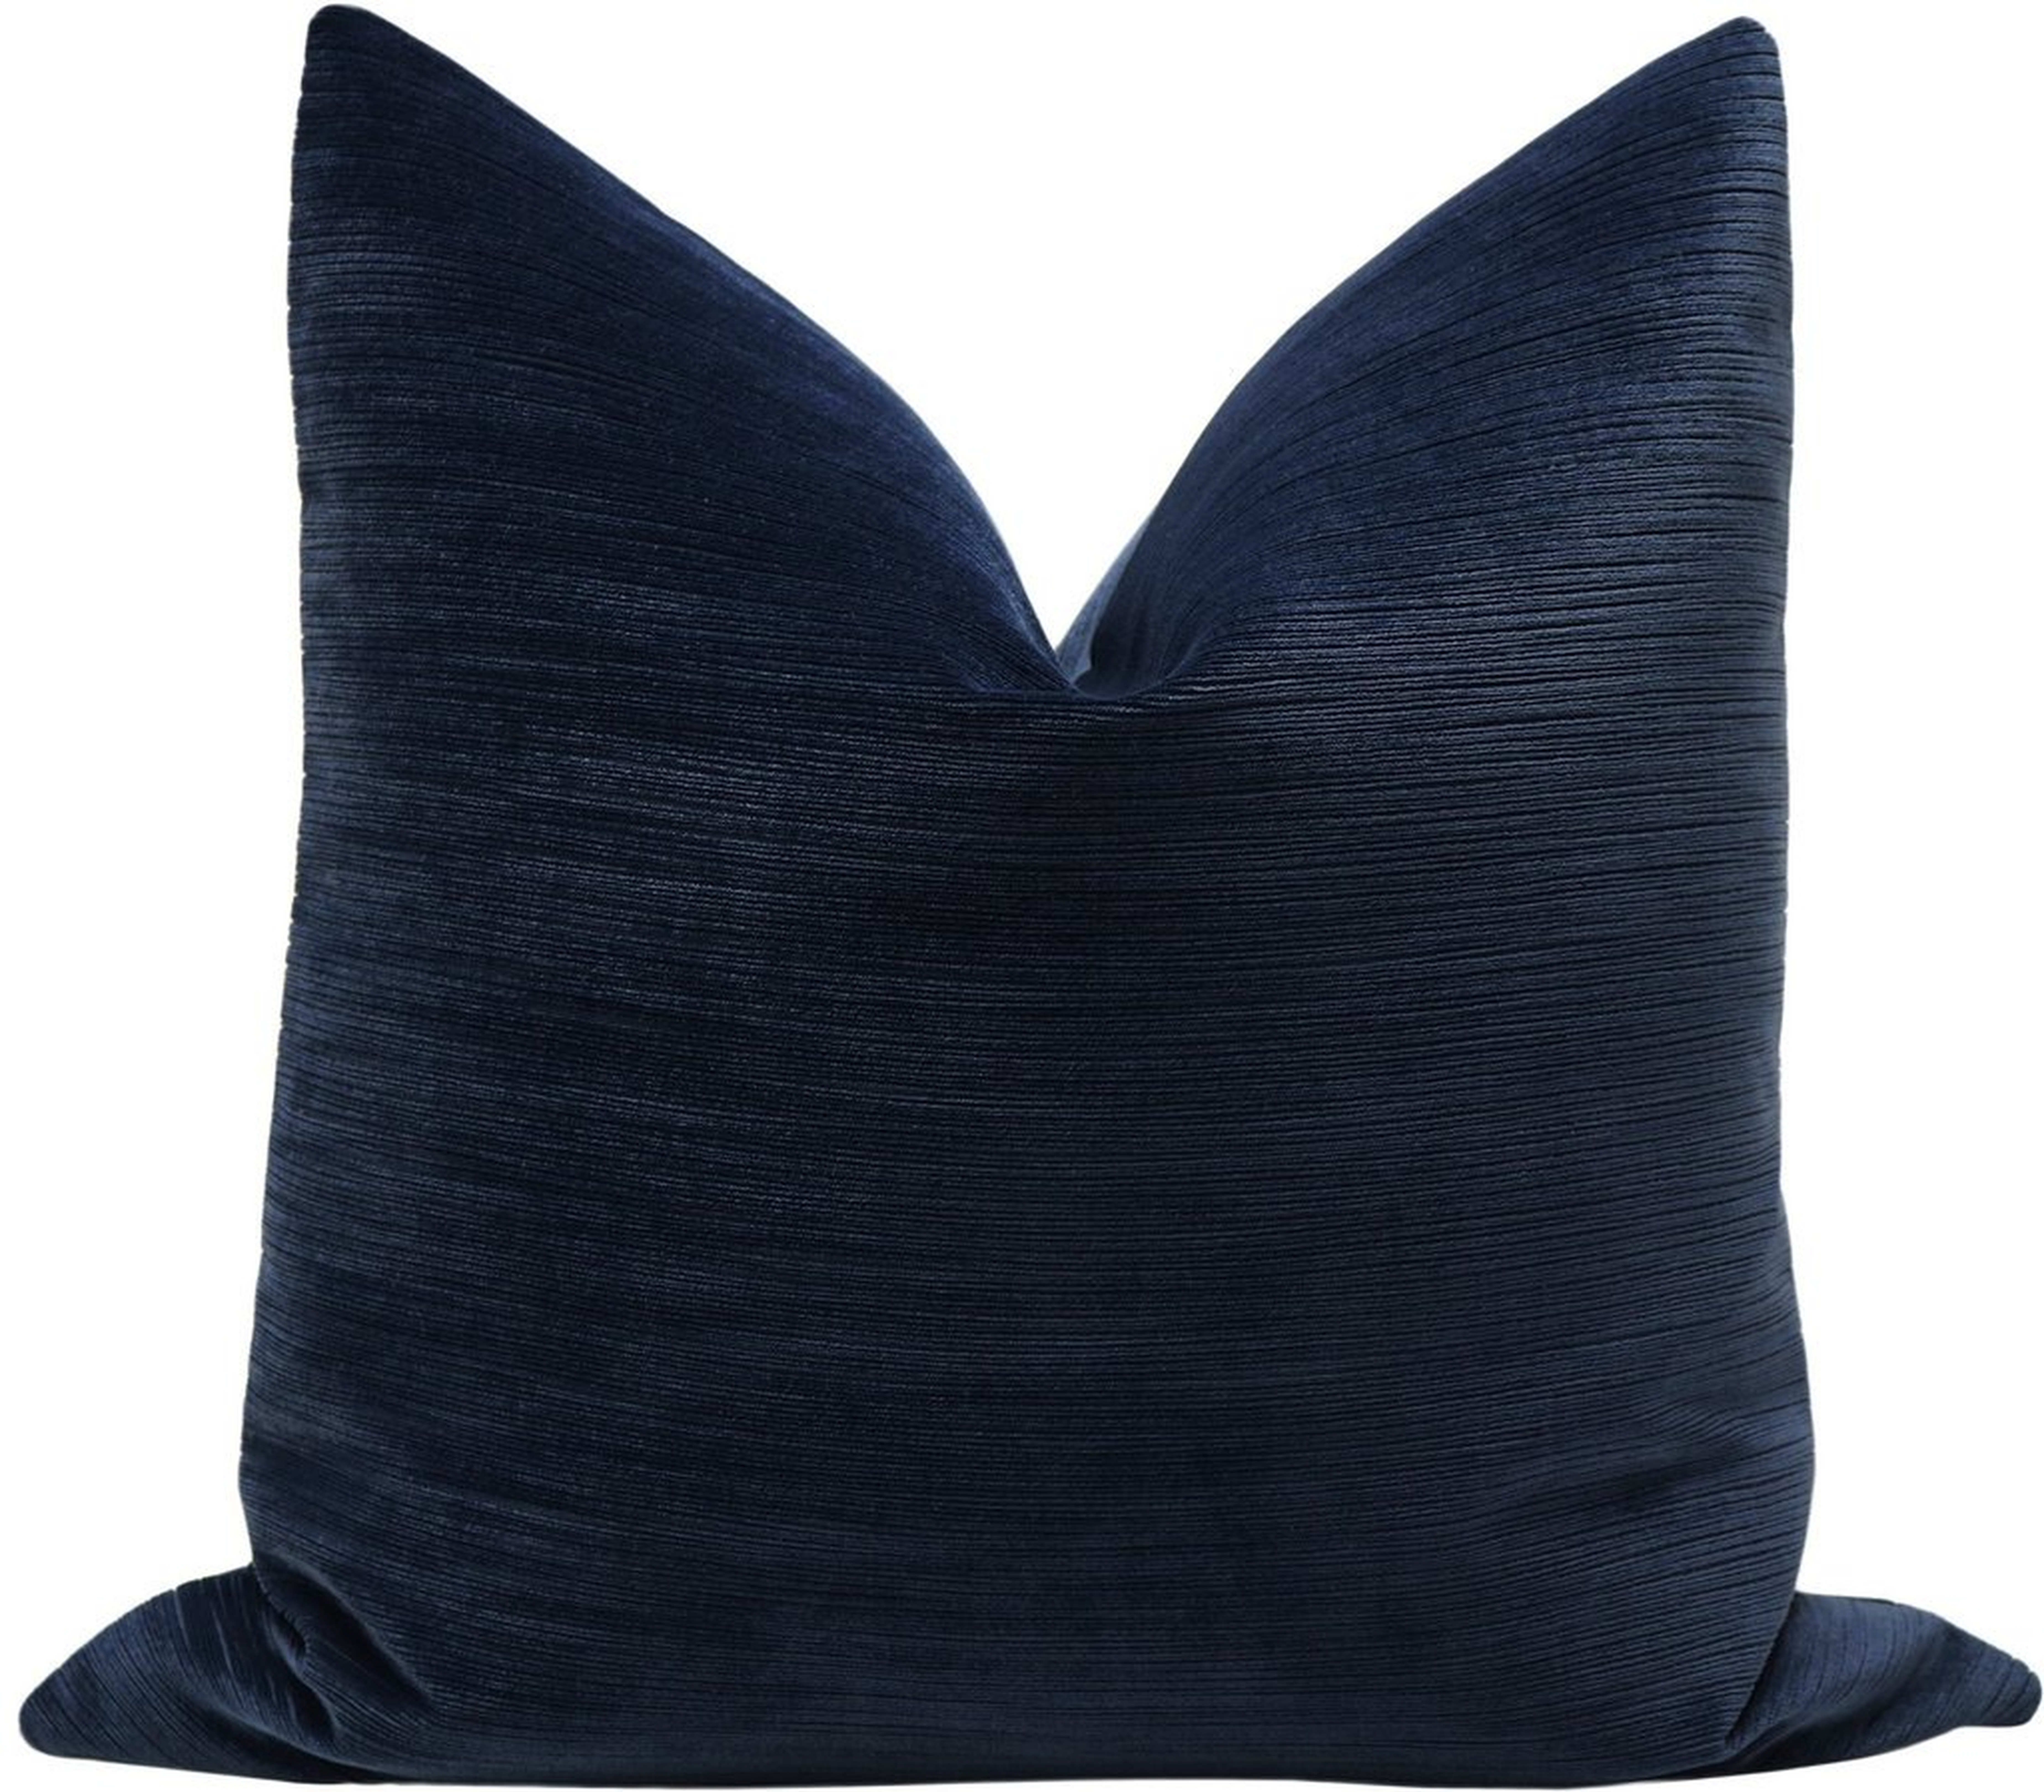 Strie Velvet // Navy Blue, 22" Pillow Cover - Little Design Company